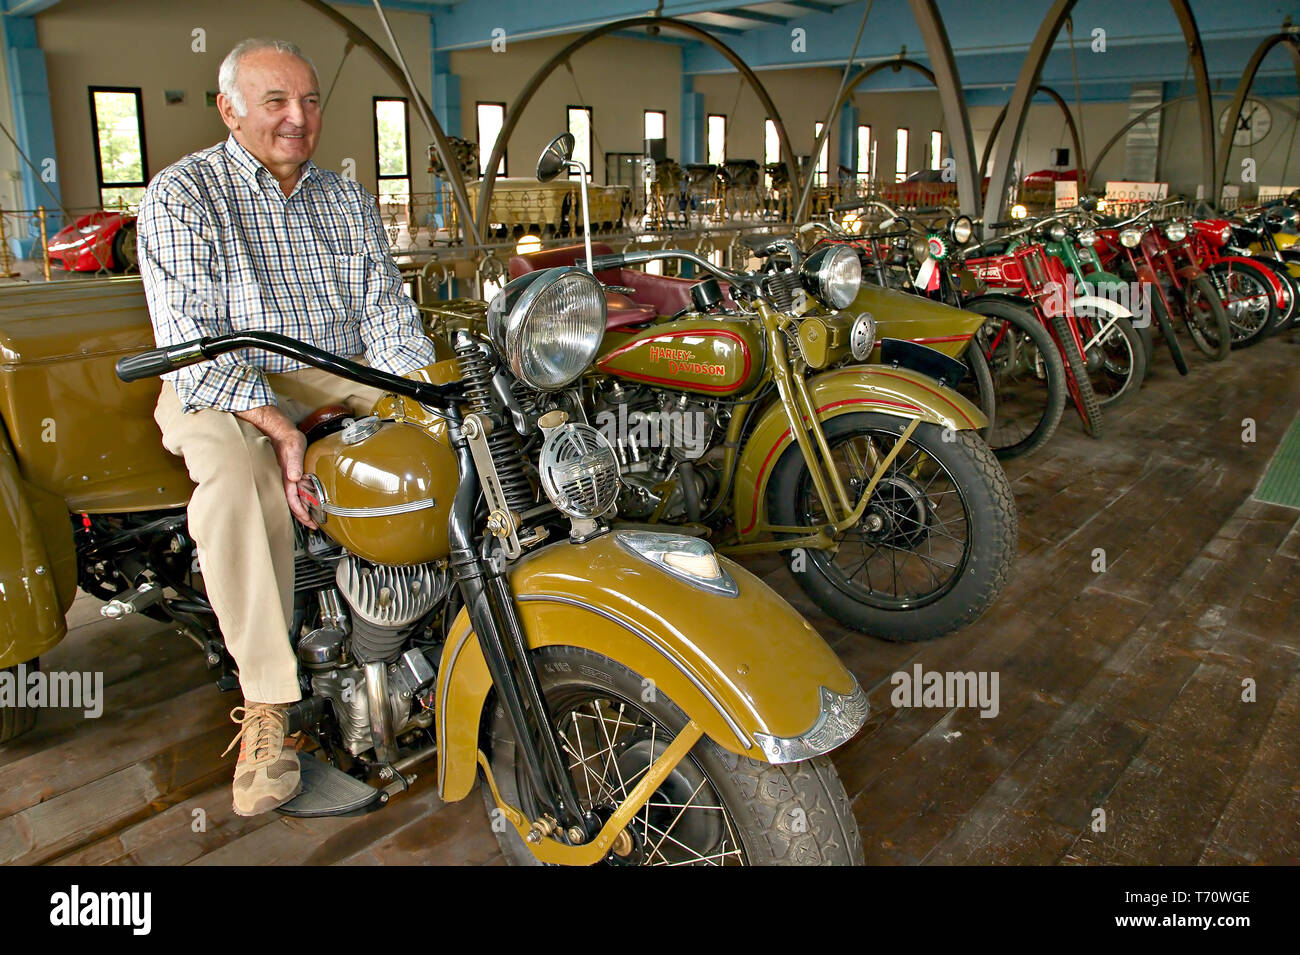 Collezione Umberto Panini (moto e auto d'epoca): Umberto Panini in sella alla sua Harley Davidson Service.  [ENG] Umberto Panini Collection of ancient Stock Photo